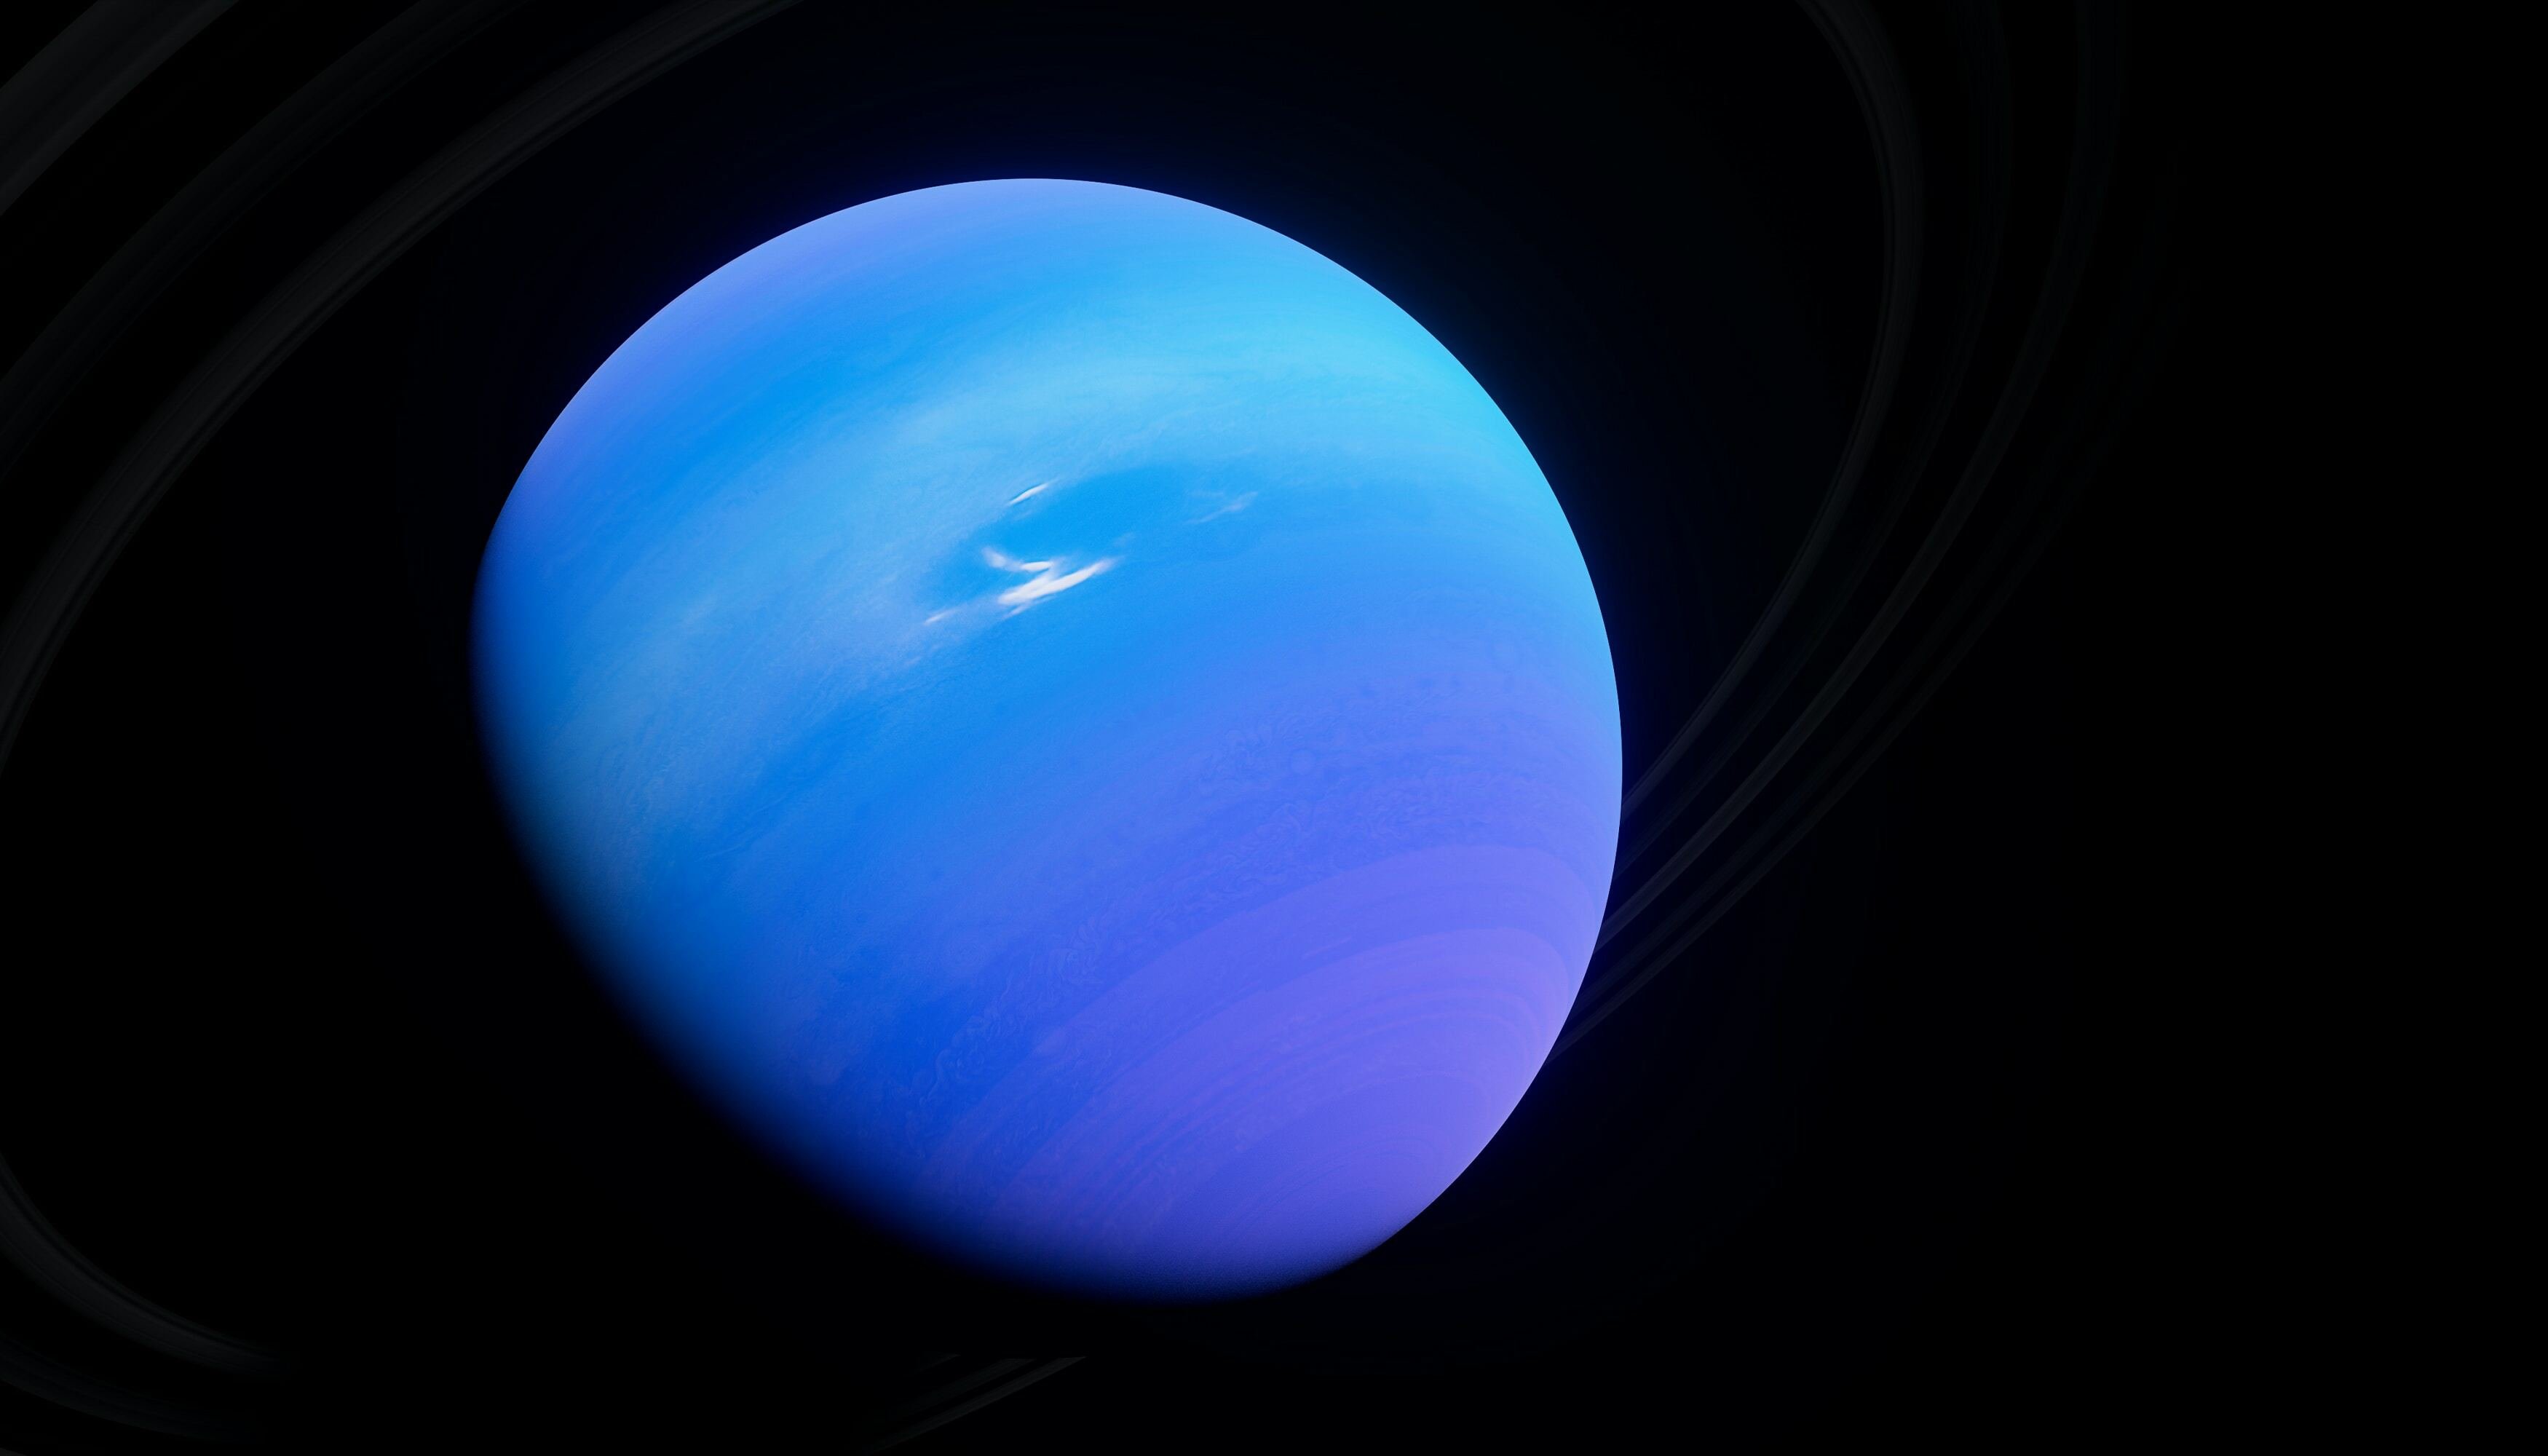 Planeta Netuno, redondo e de cor azul escura, em fundo preto do espaço.